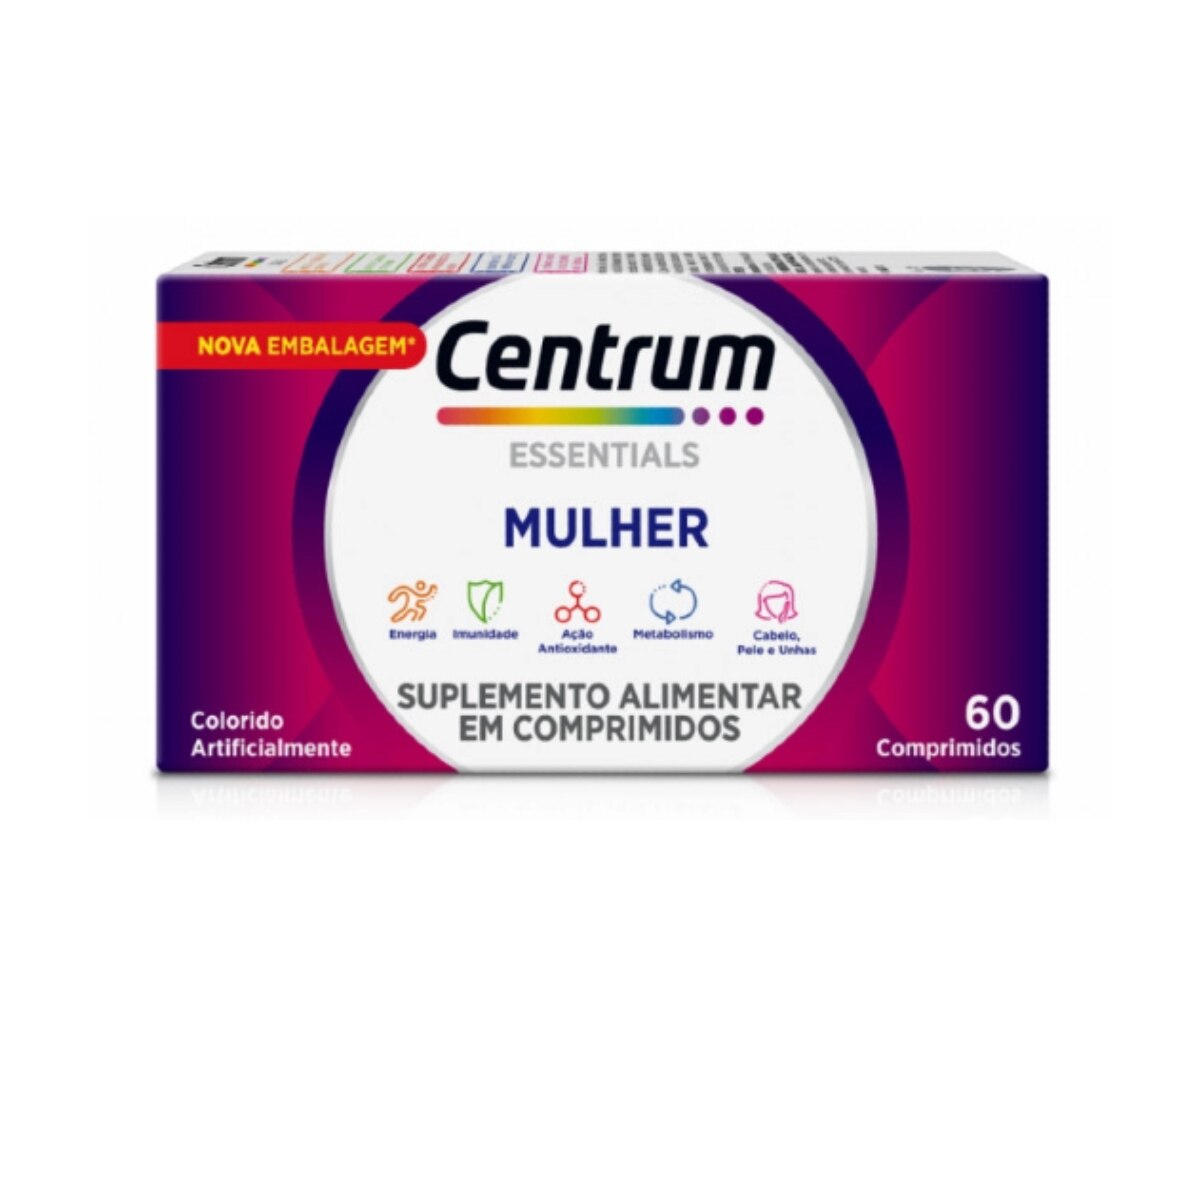 Centrum Essentials Mulher 60 Comprimidos Revestidos